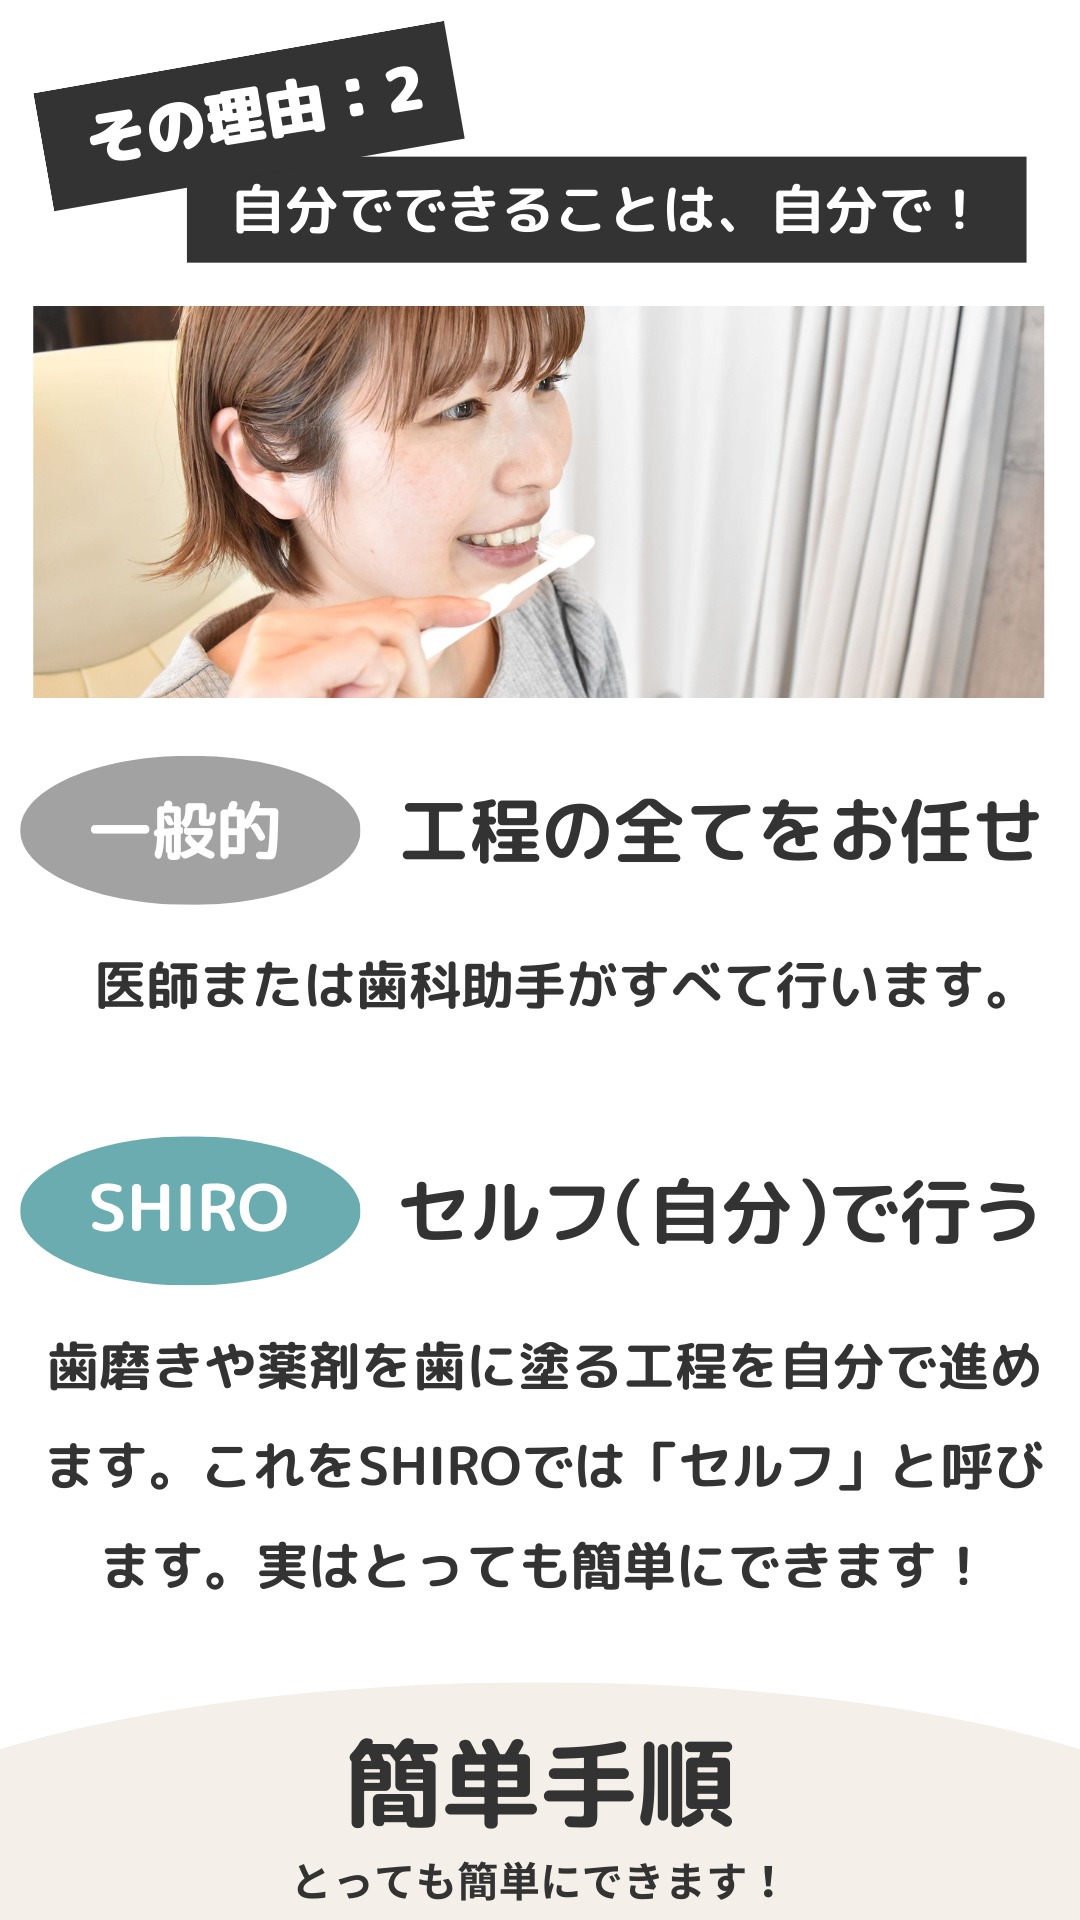 SHIROのセルフホワイトニングはとても簡単